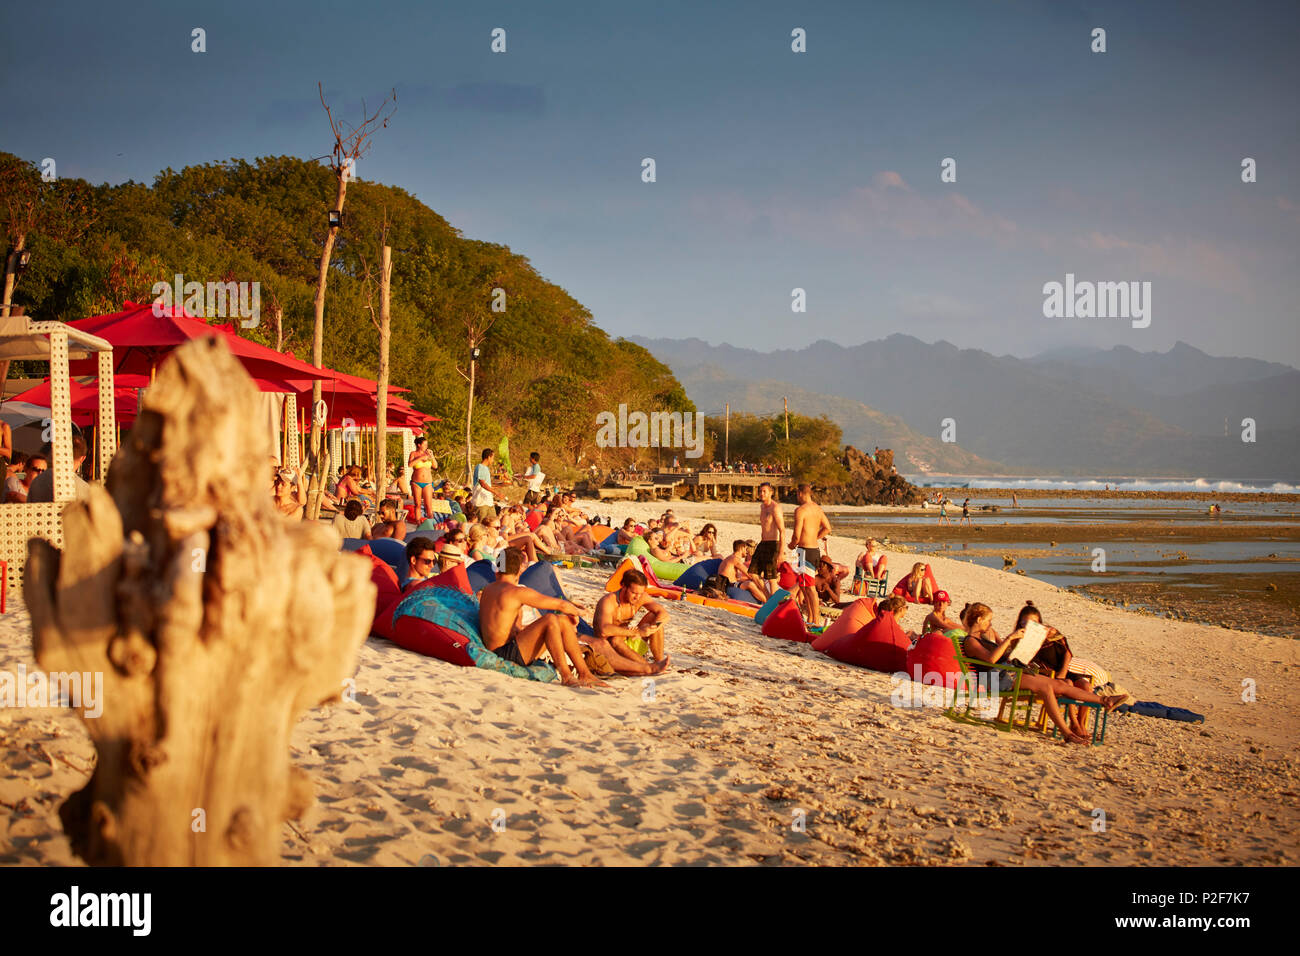 A los huéspedes en un bar de playa, Gili Trawangan, Lombok, Indonesia Foto de stock